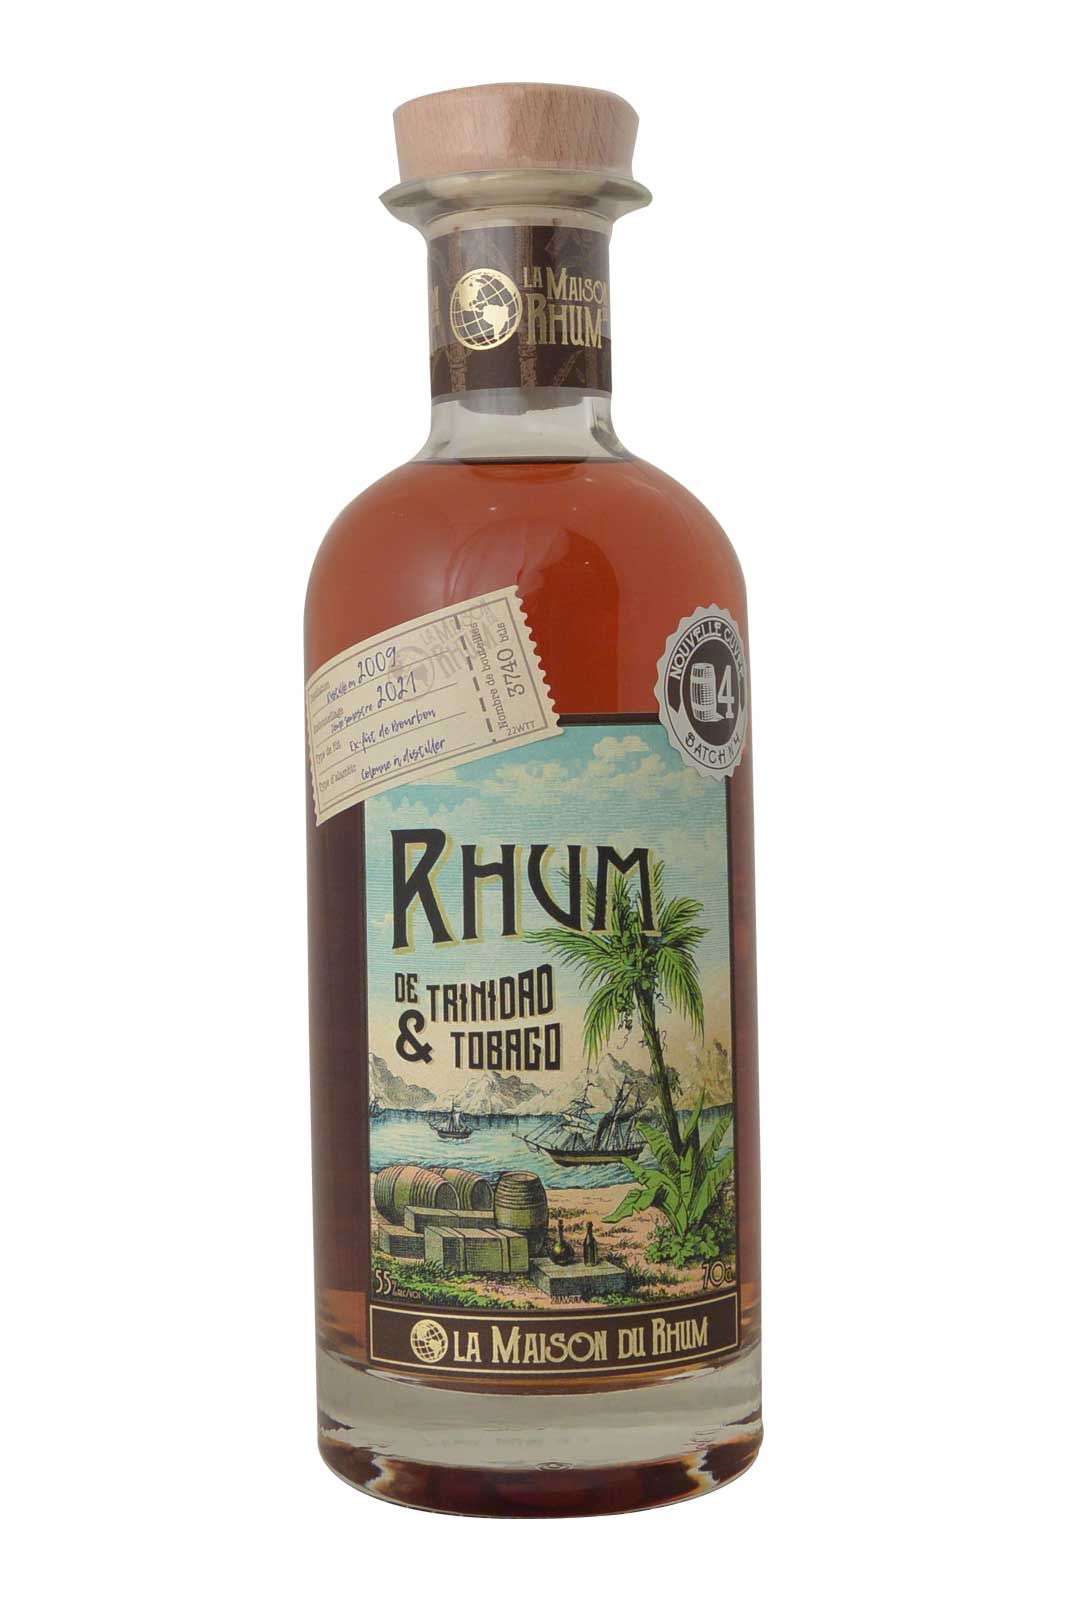 The House of Trinidad Tobago Rum batch#4 2009